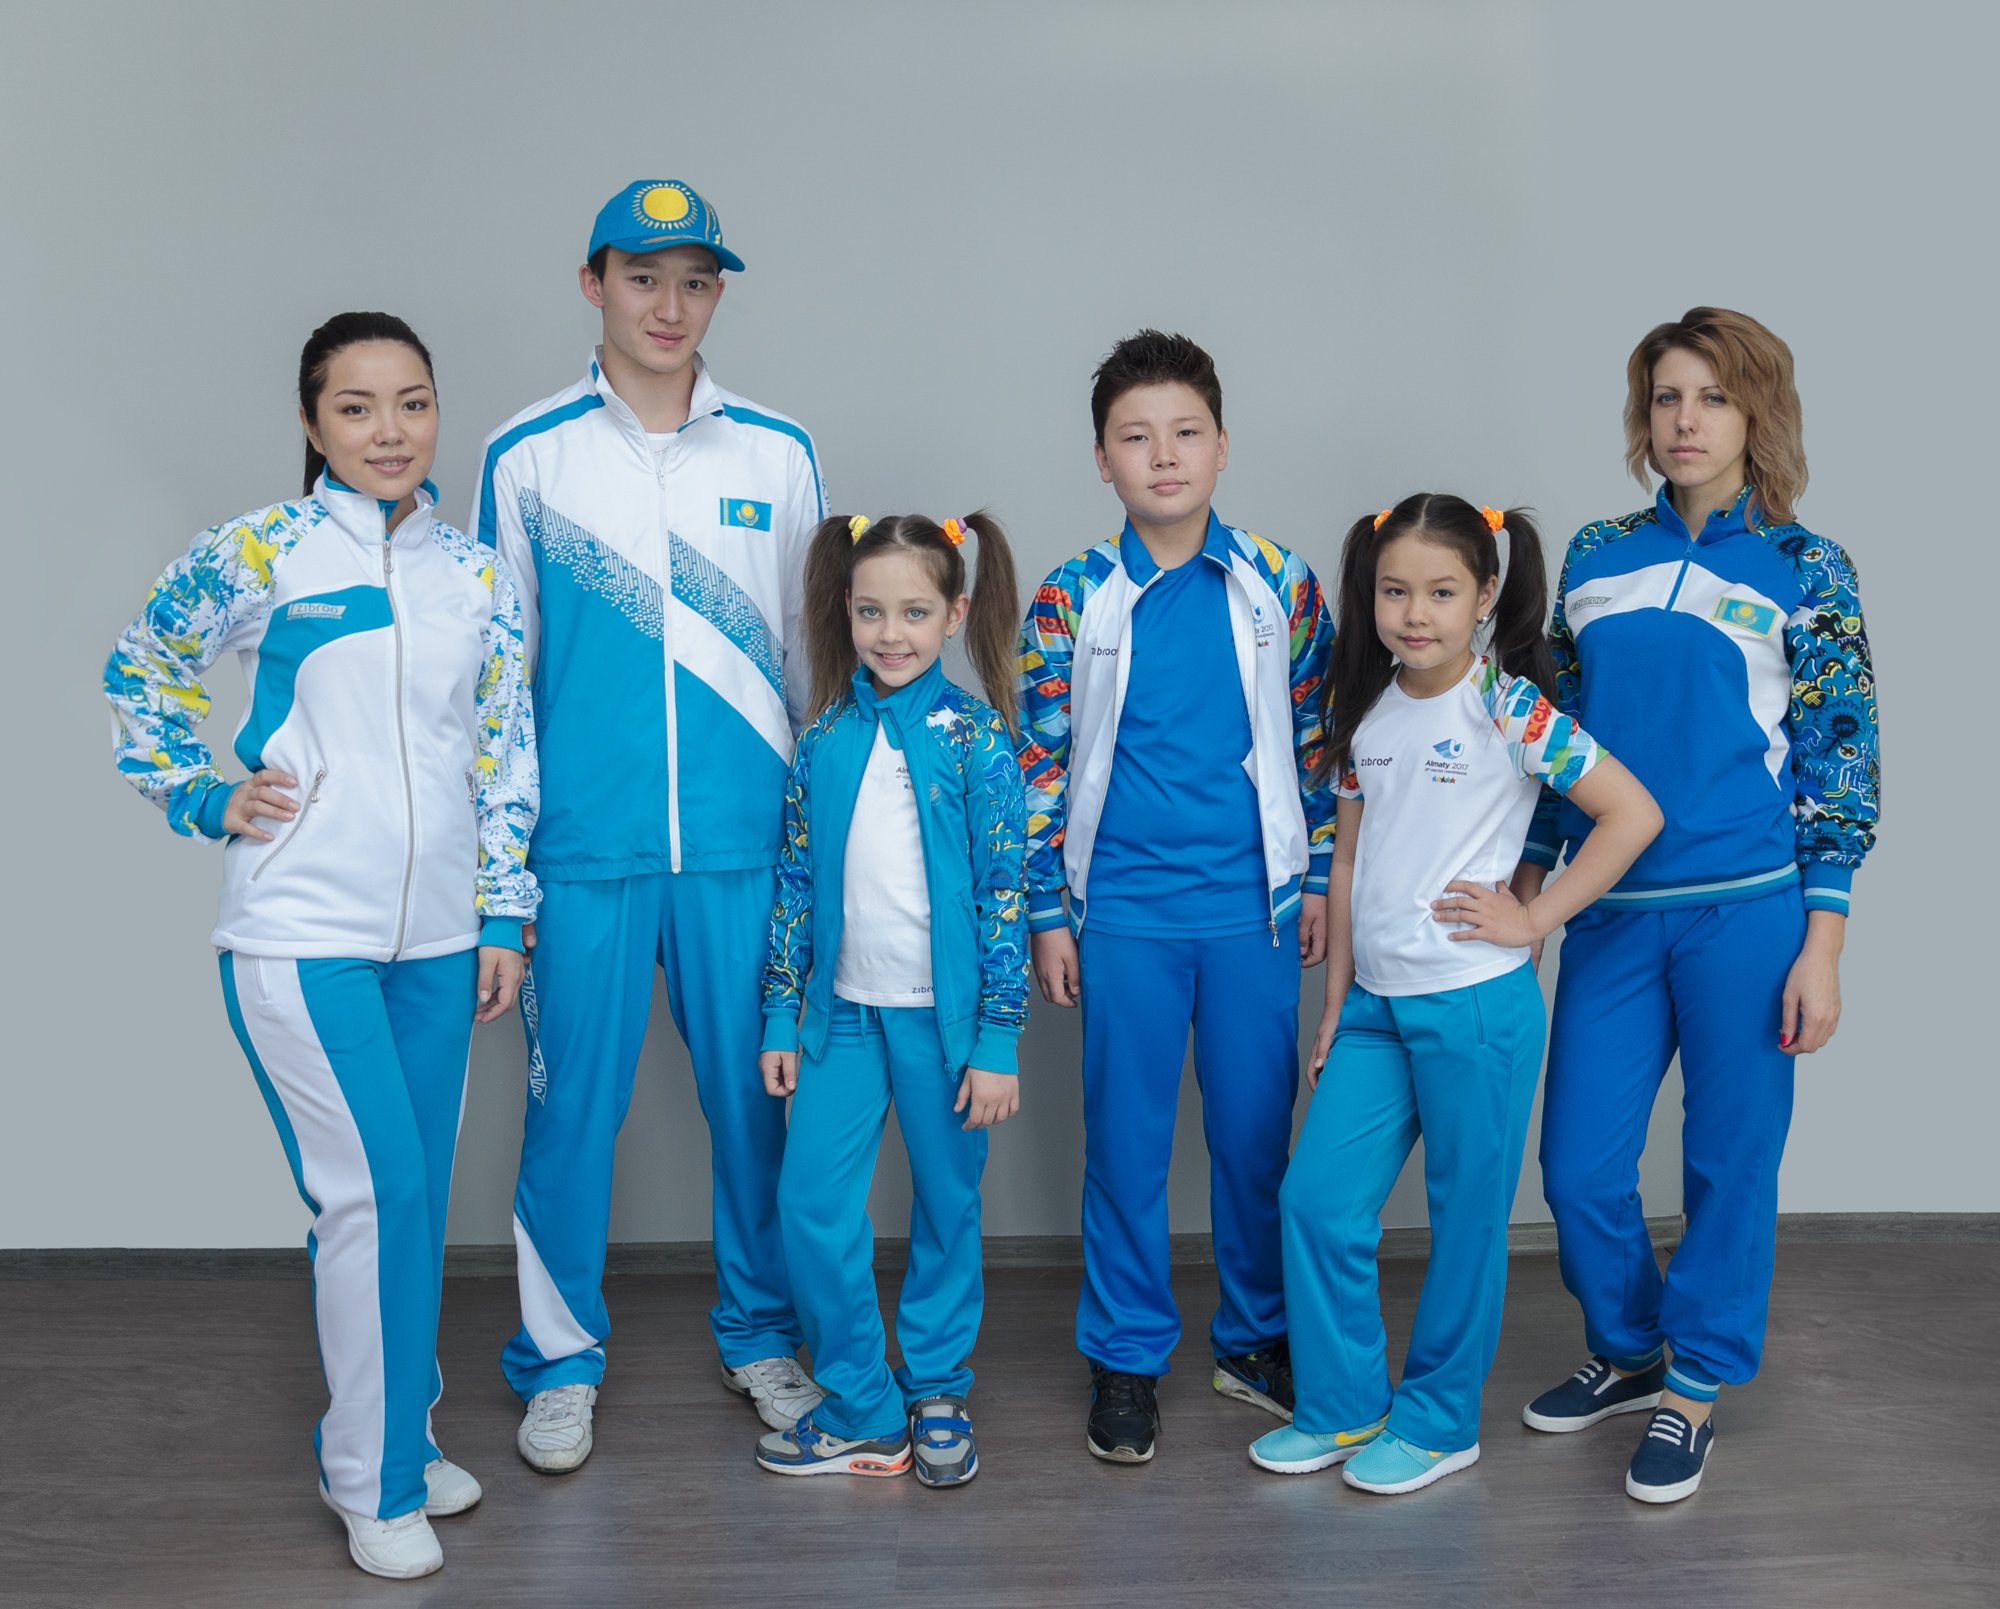 Спортивные костюмы для команды. Спортивная форма. Детская спортивная одежда. Спортивный костюм Казахстан. Спортивная форма одежды.